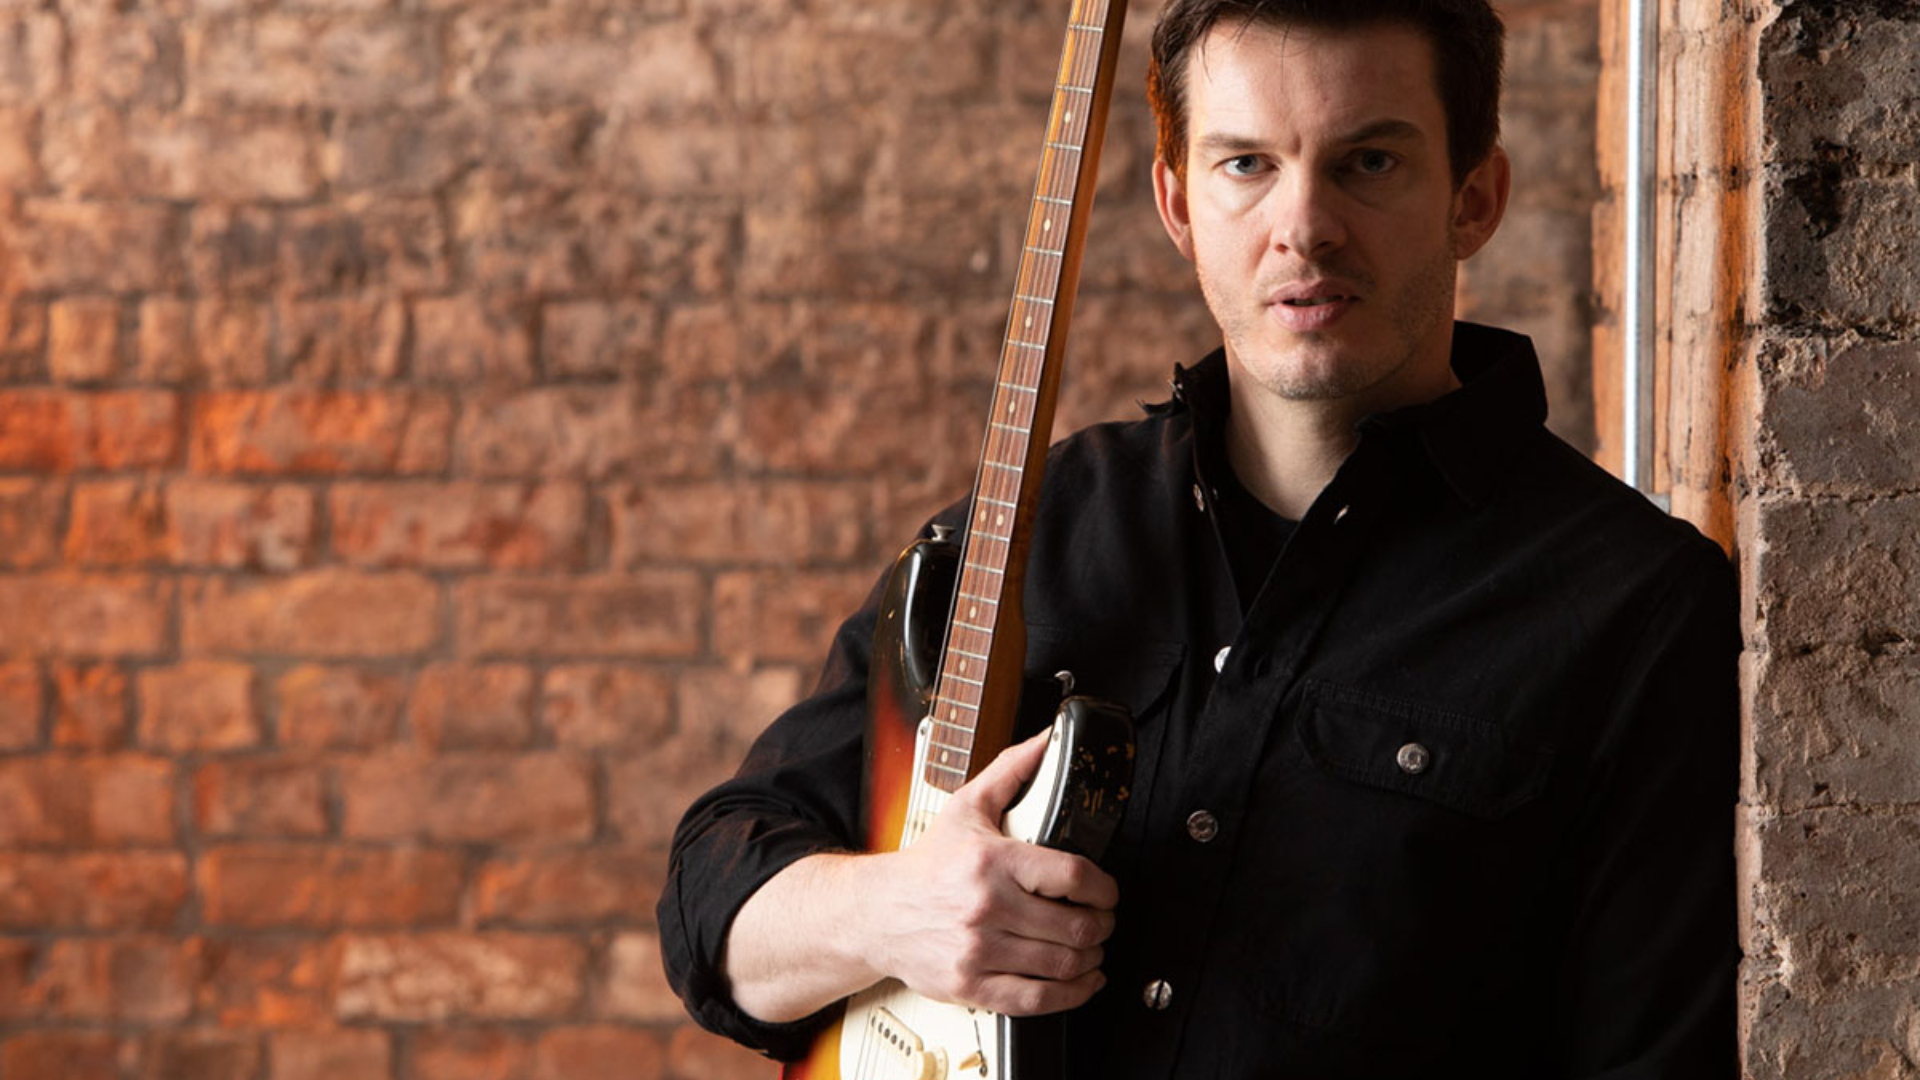 Dan Machin leans against a brick wall holding his Fender guitar